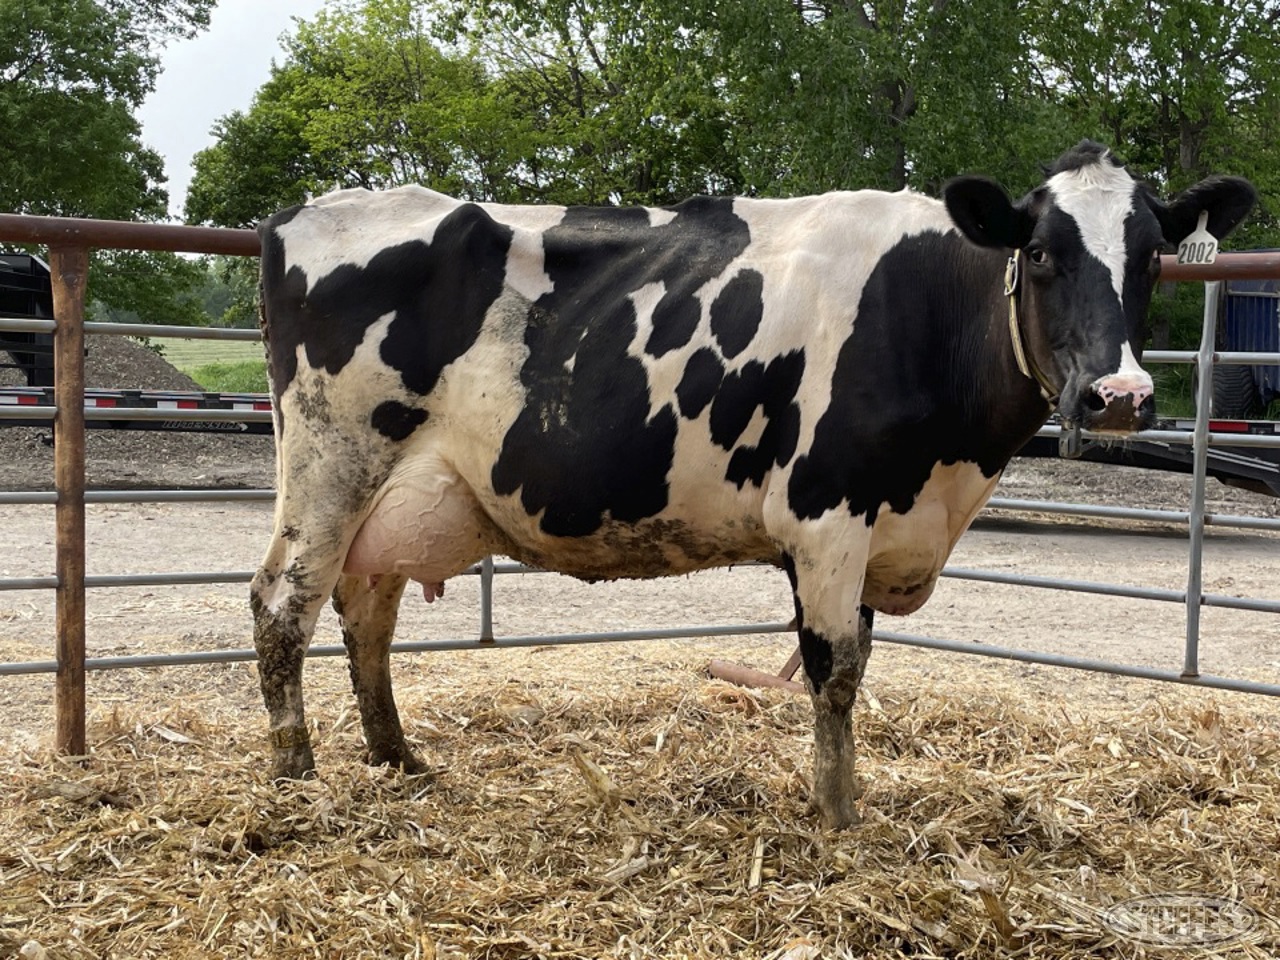 (6 Head) Holstein cows